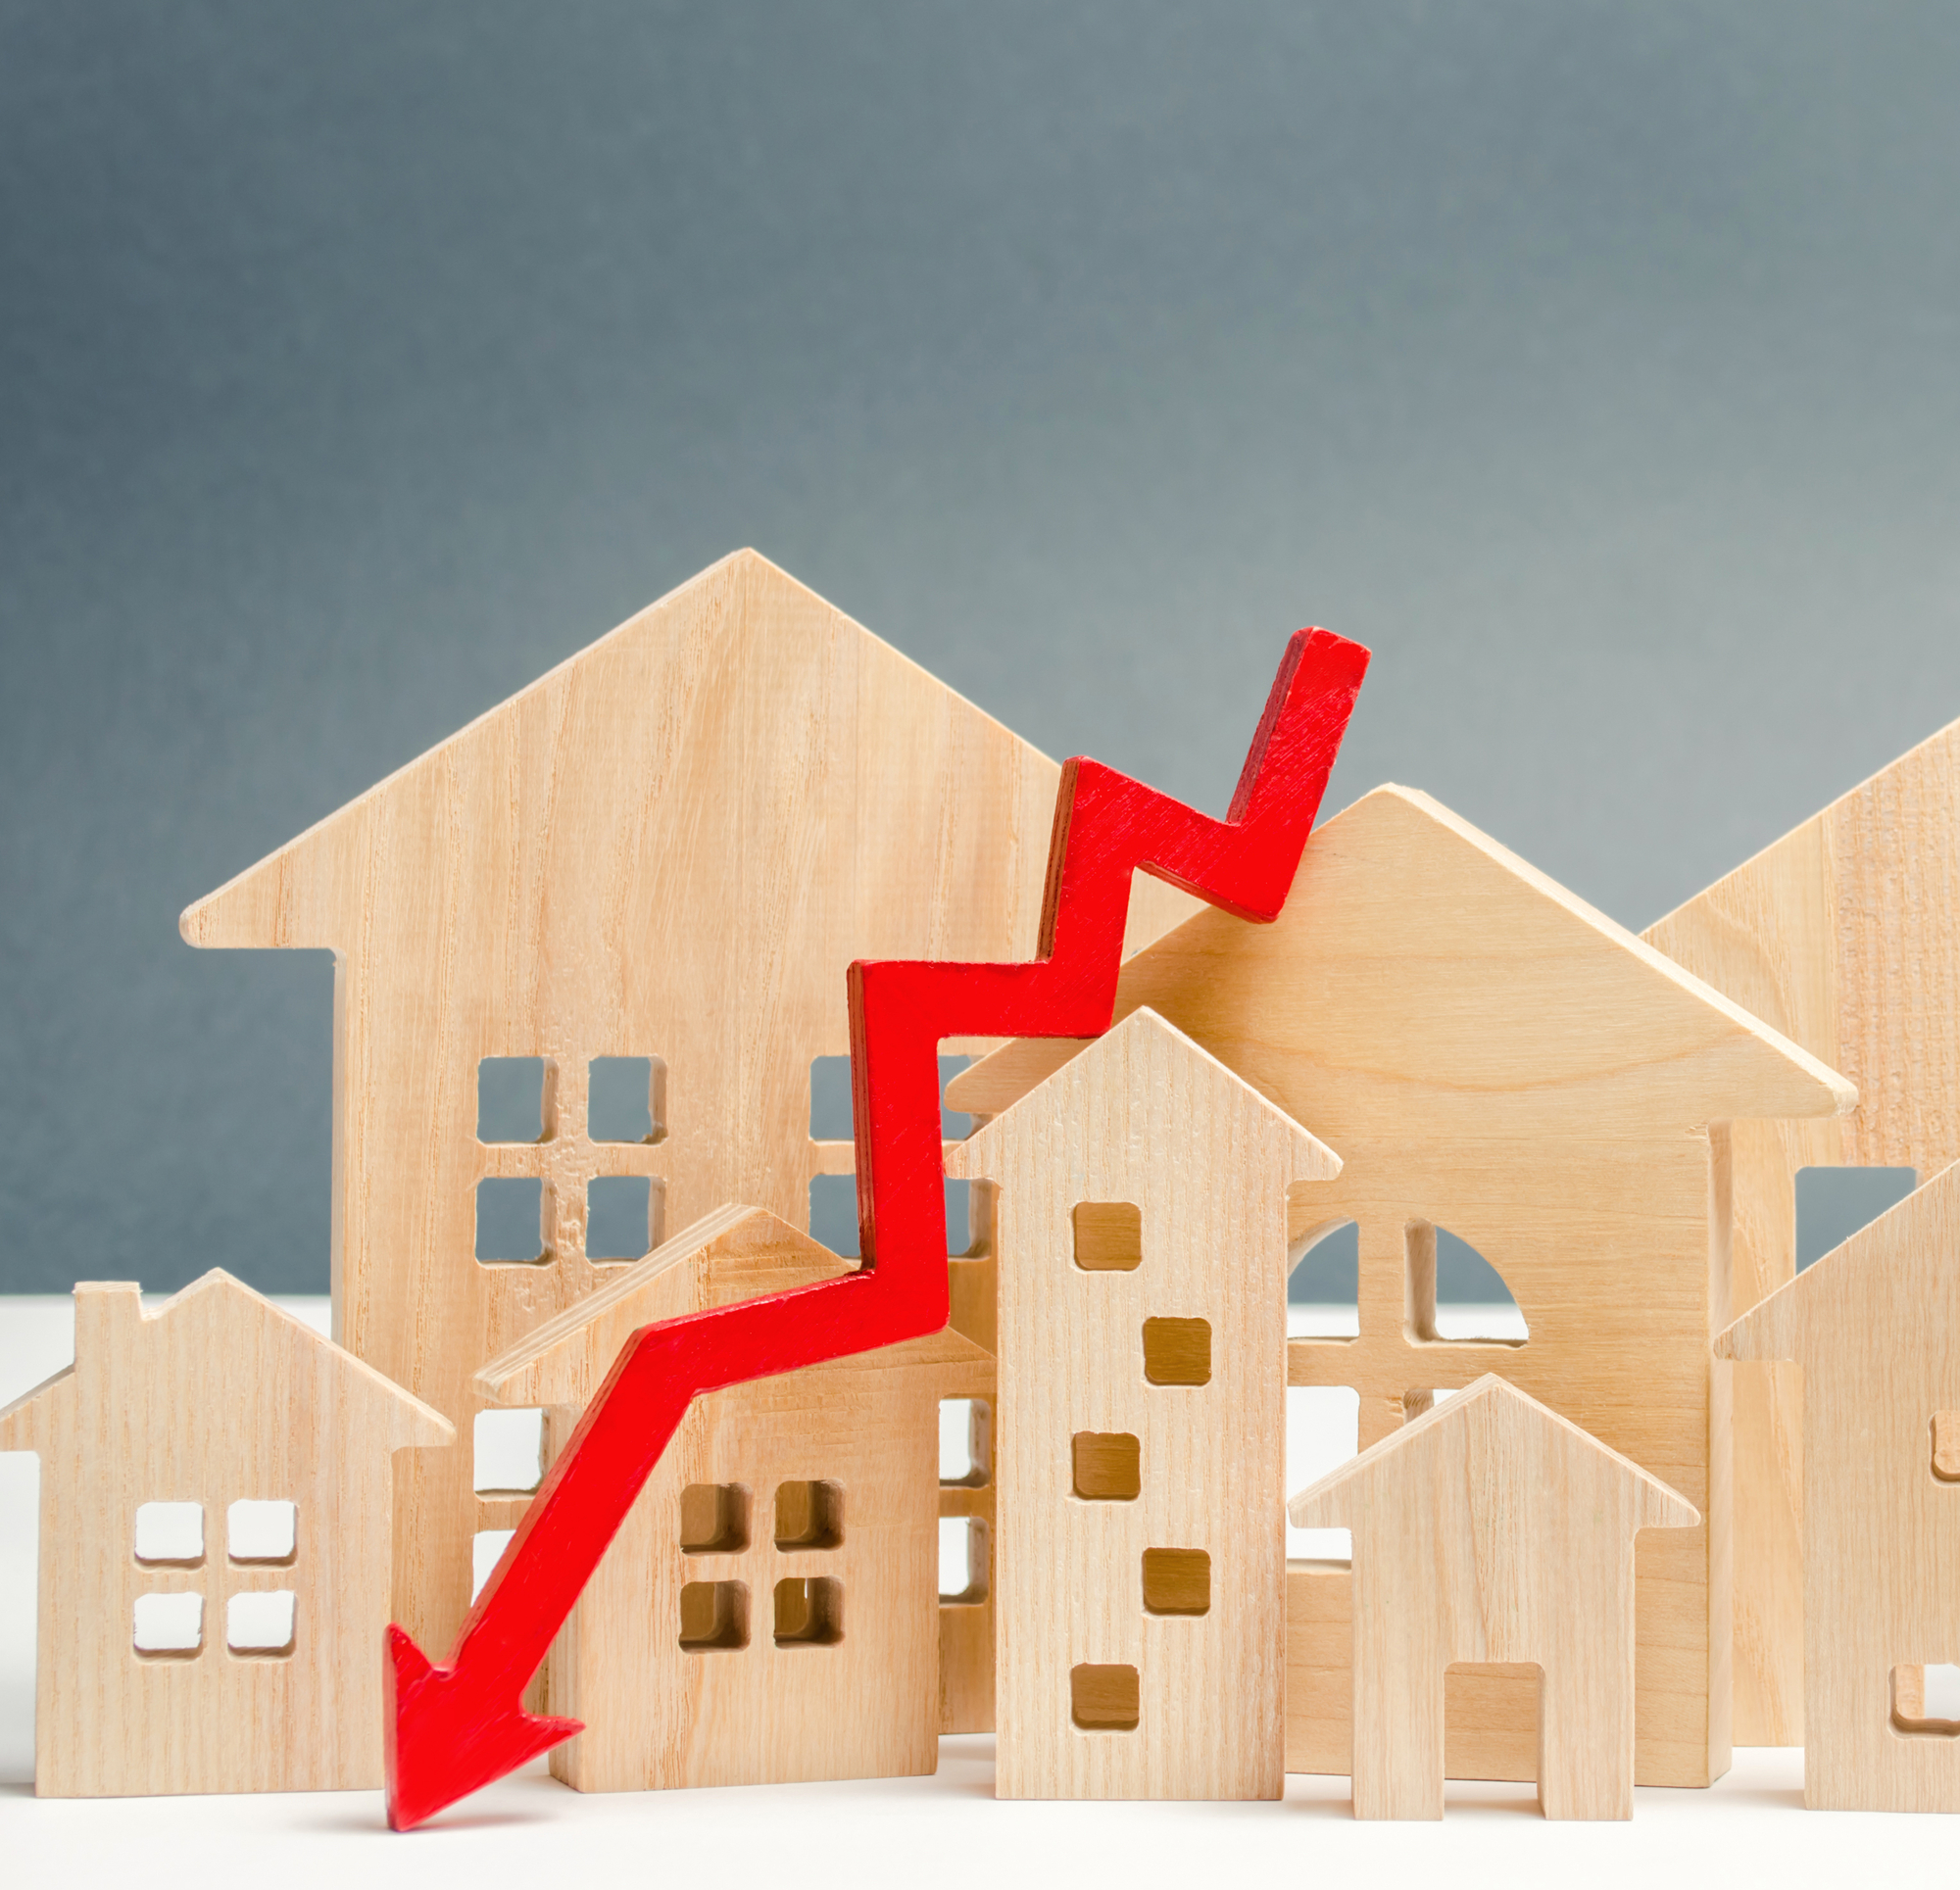 Expertul economic Viorel Gîrbu pentru INFODEBIT: Urmare a creșterii puternice înregistrată anul trecut, piața imobiliară a intrat în declin 